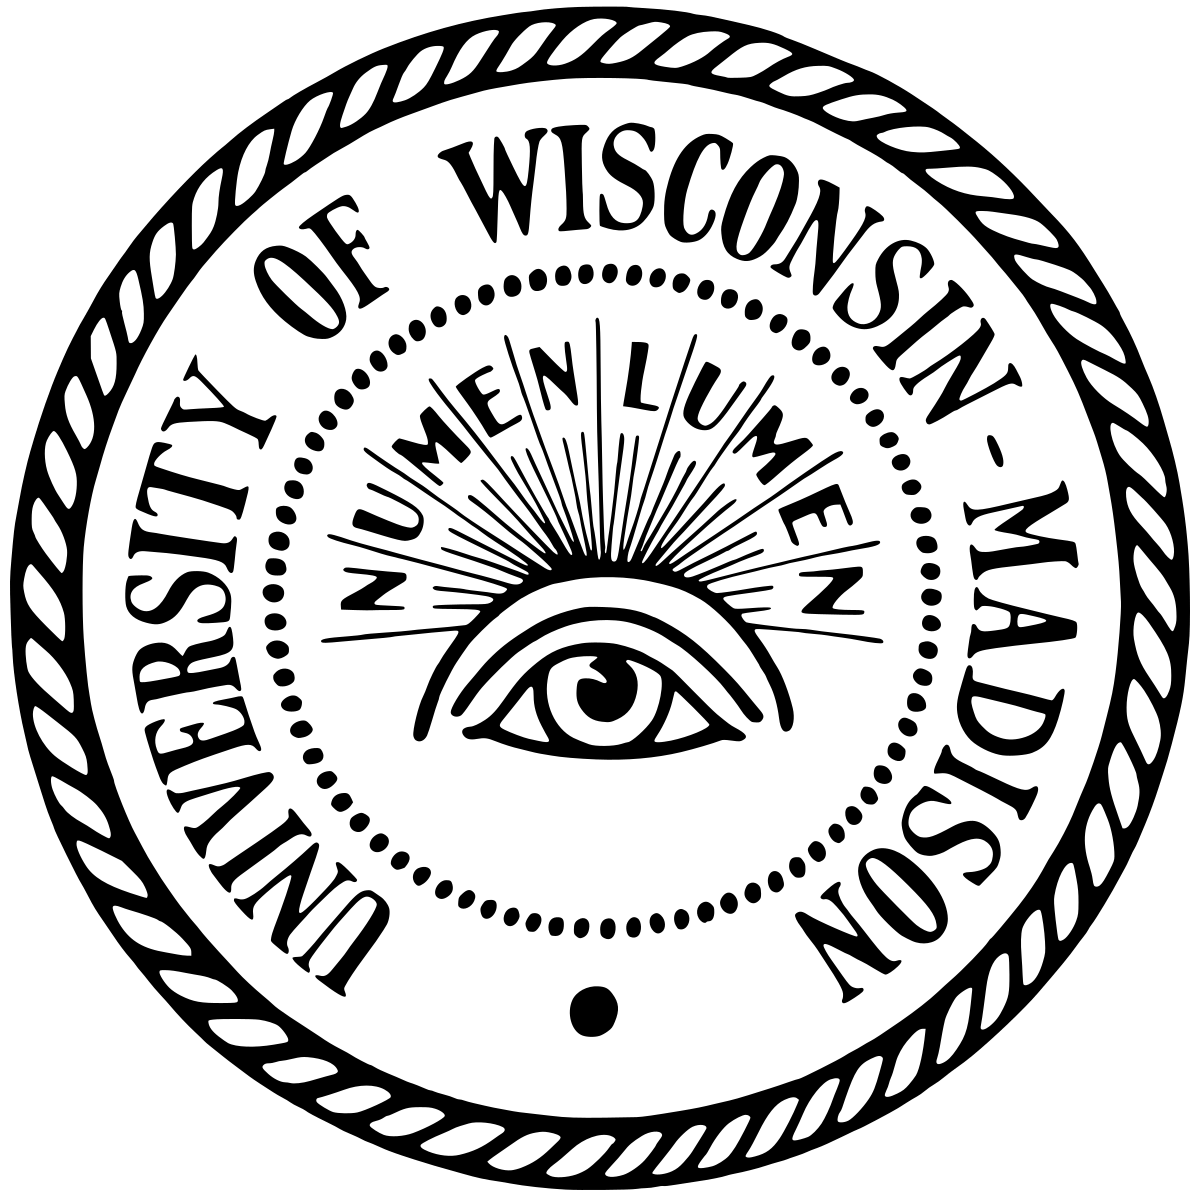 UW-Madison Logo - University of Wisconsin–Madison